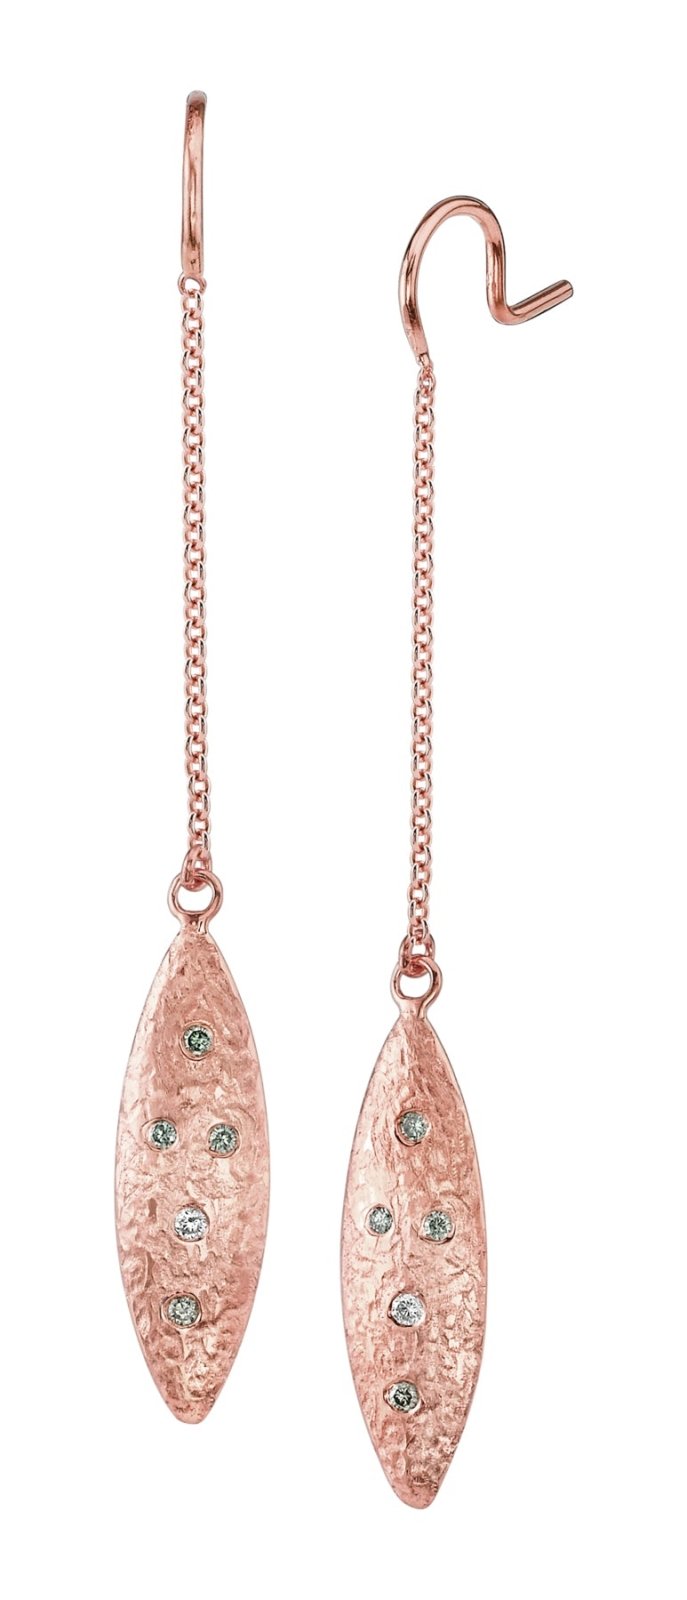 Sea Earrings - Ele Keats Jewelry